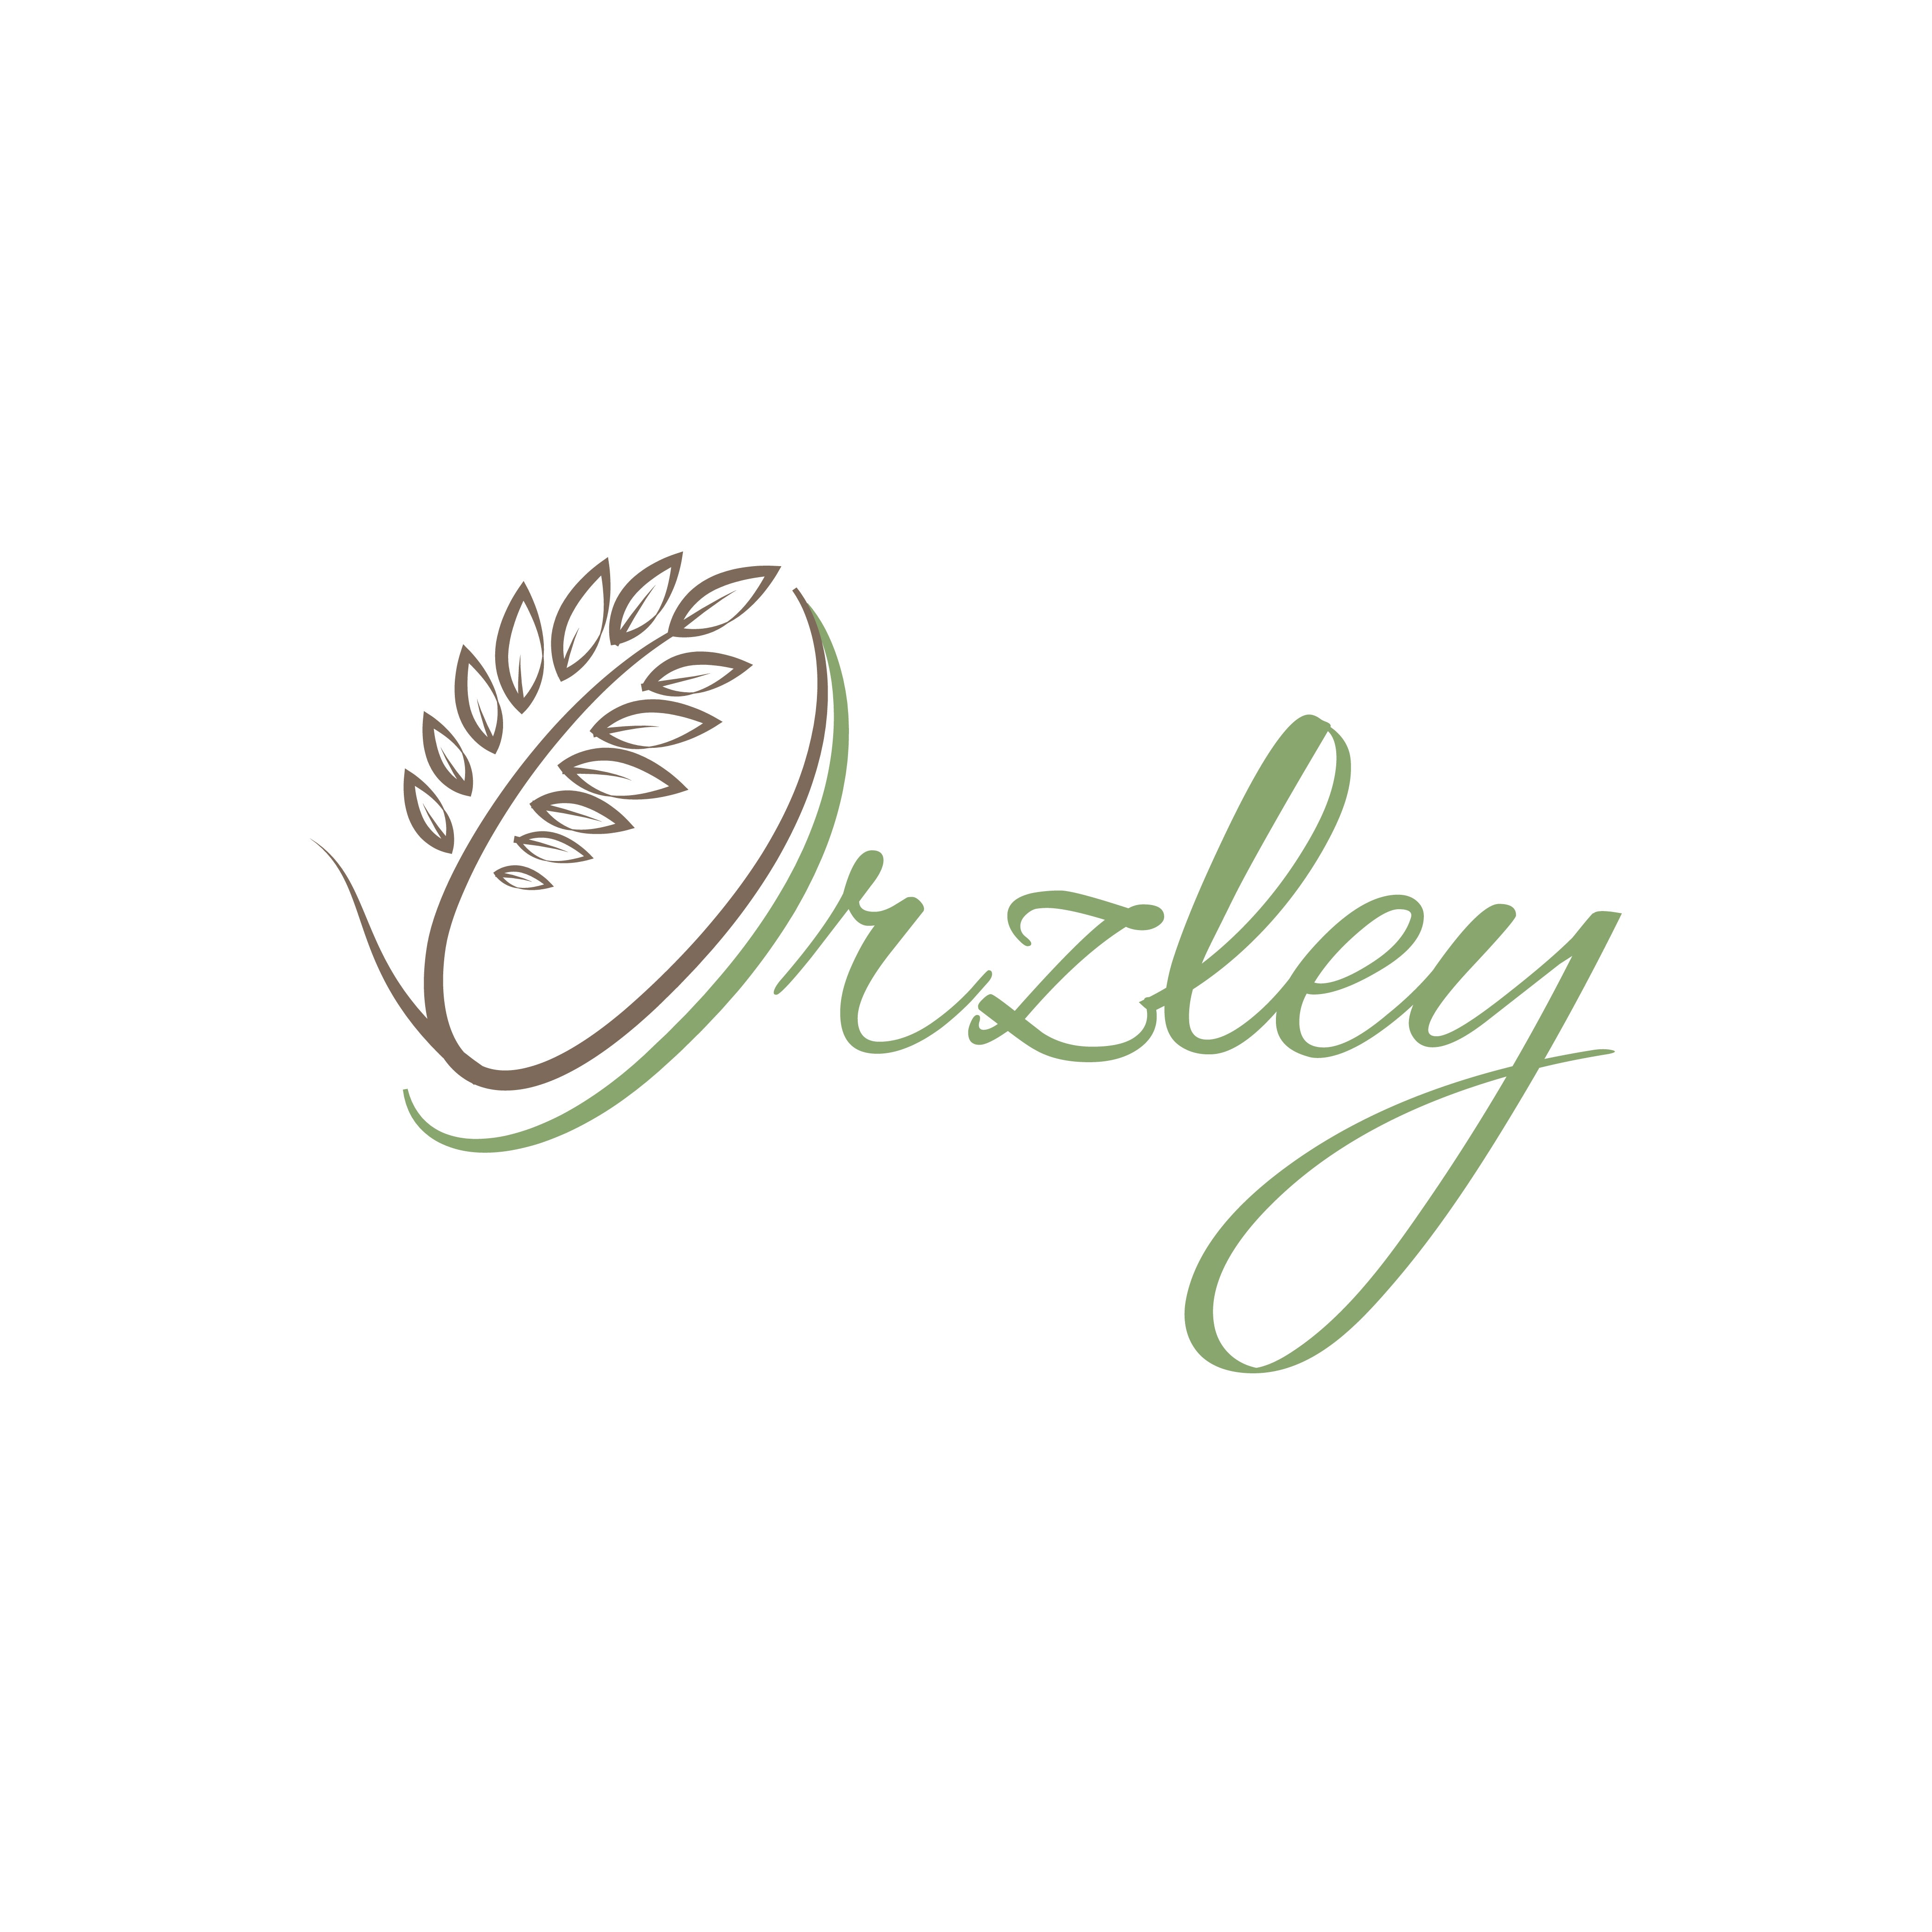 Orzley